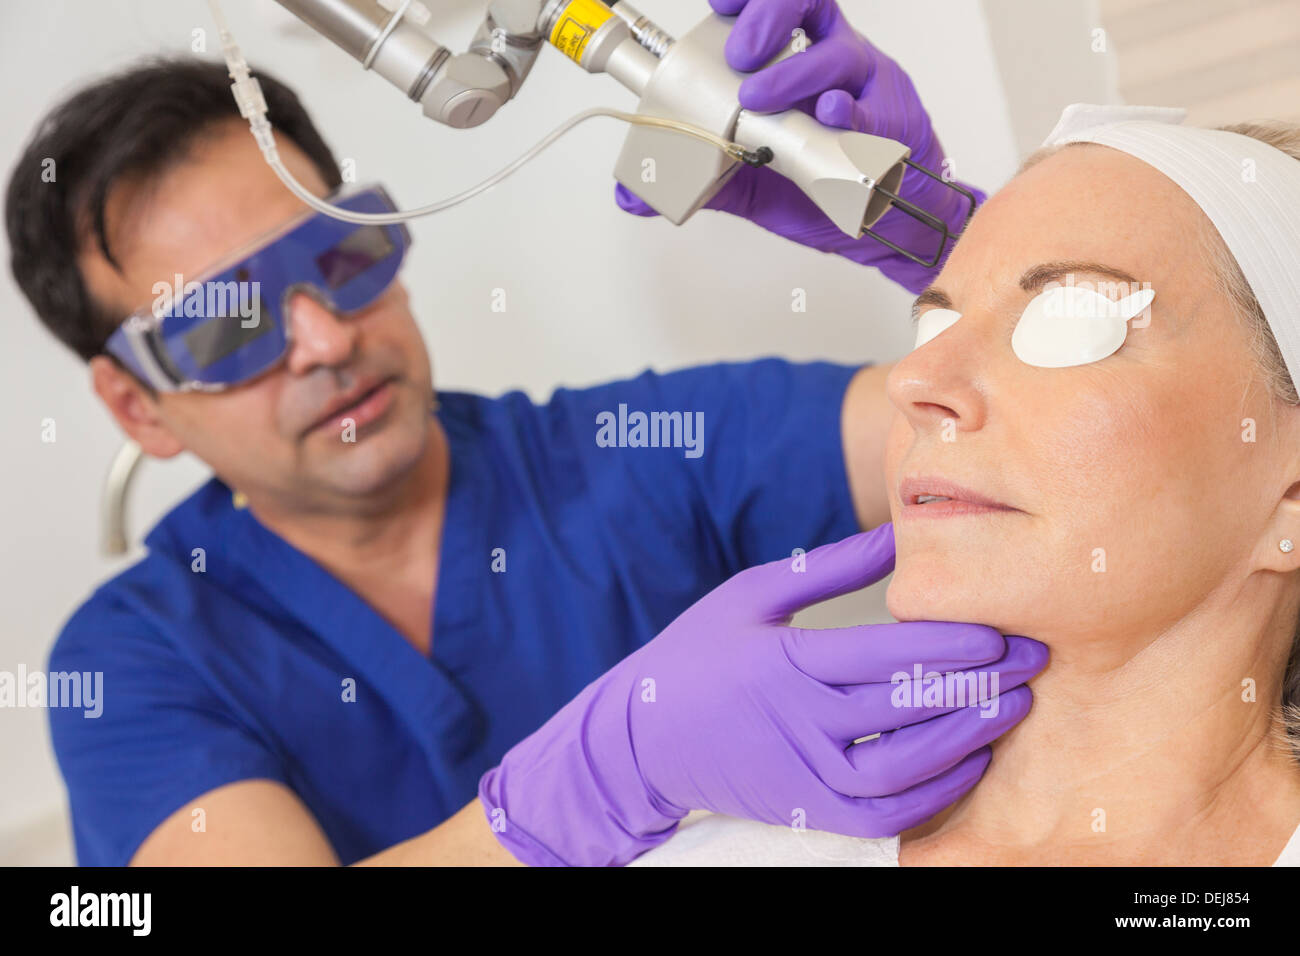 Ein Schönheitschirurg Arzt geben fraktionierte CO2-Laser Hautbehandlung auf das Gesicht eines älteren weiblichen Frau Patienten Stockfoto